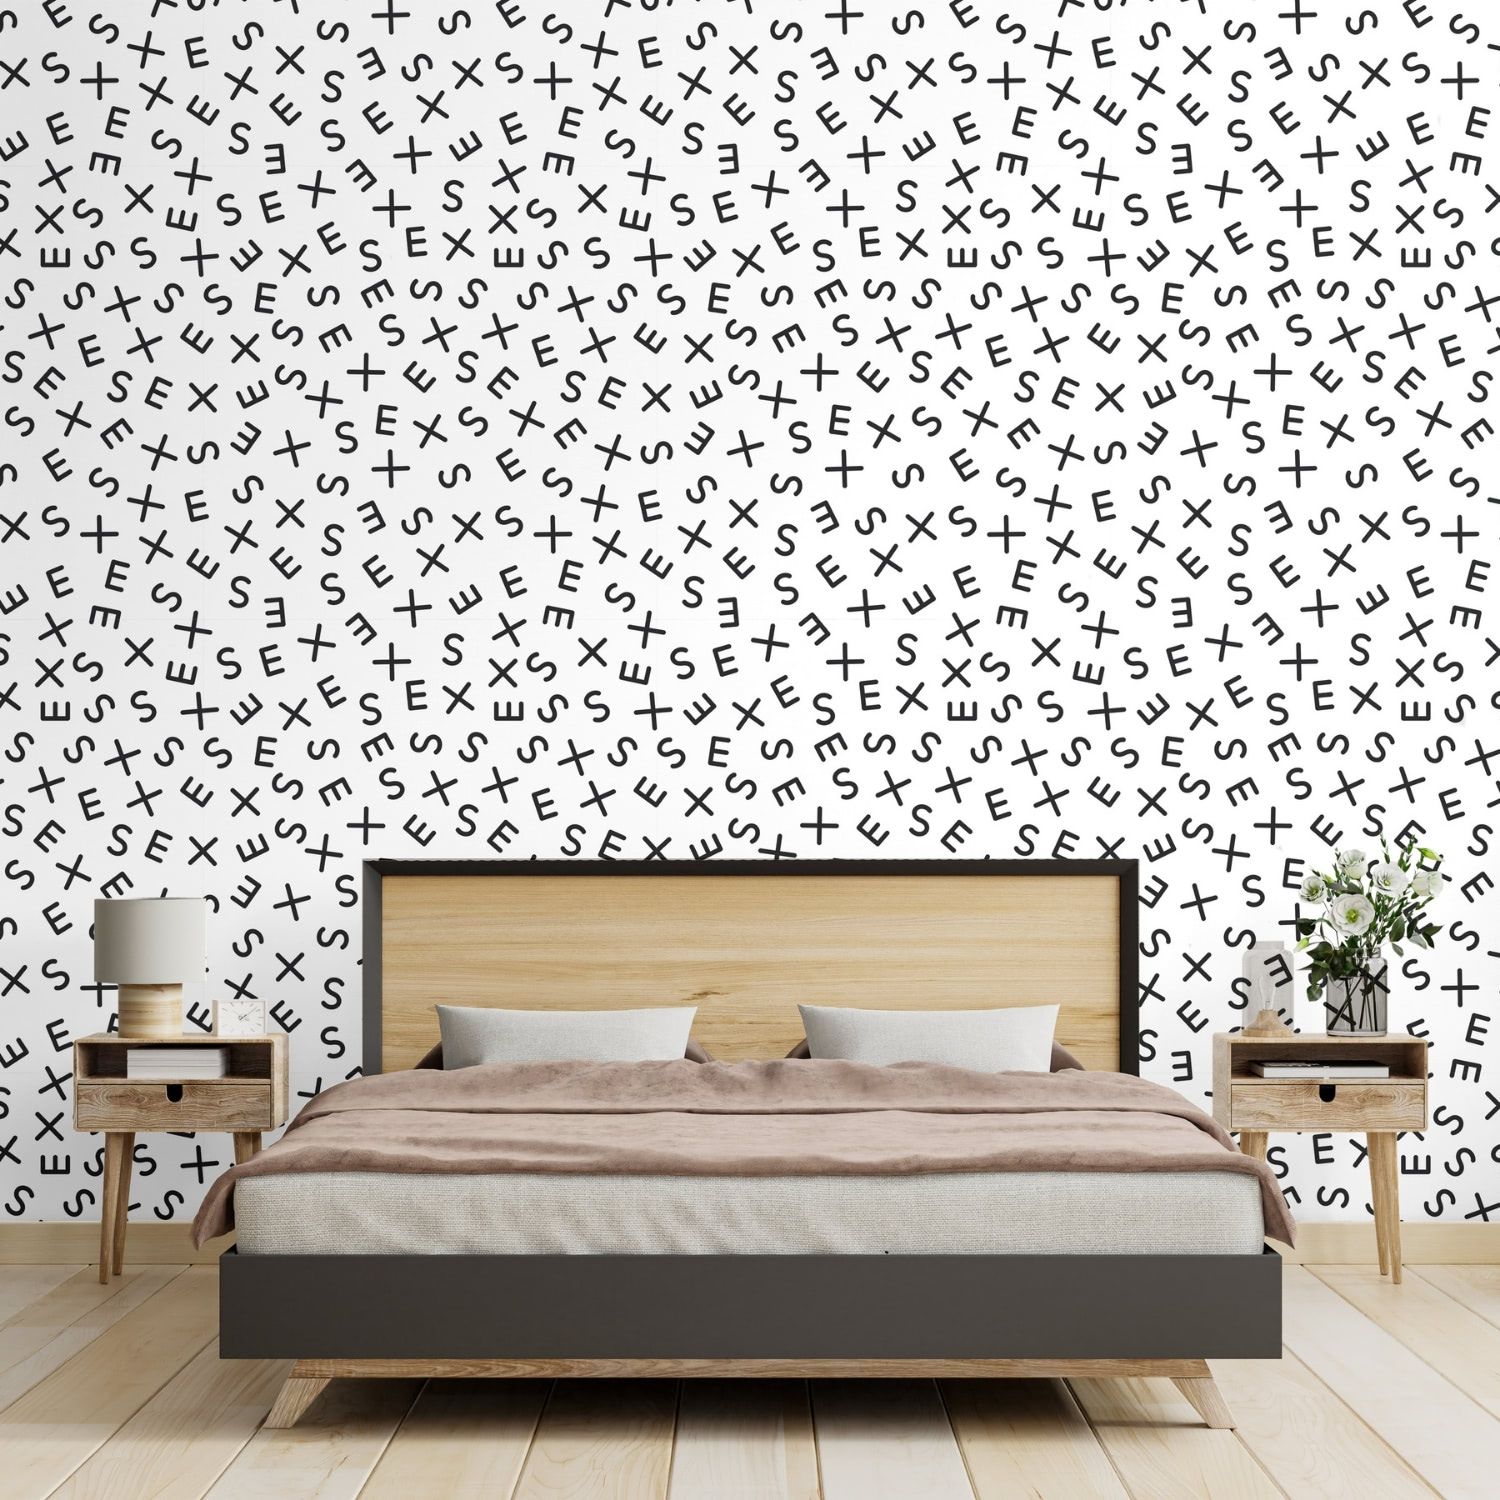 PP1-papier-peint-adhesif-decoratif-revetement-vinyle-motifs-lettrage-sexe-renovation-meuble-mur-3